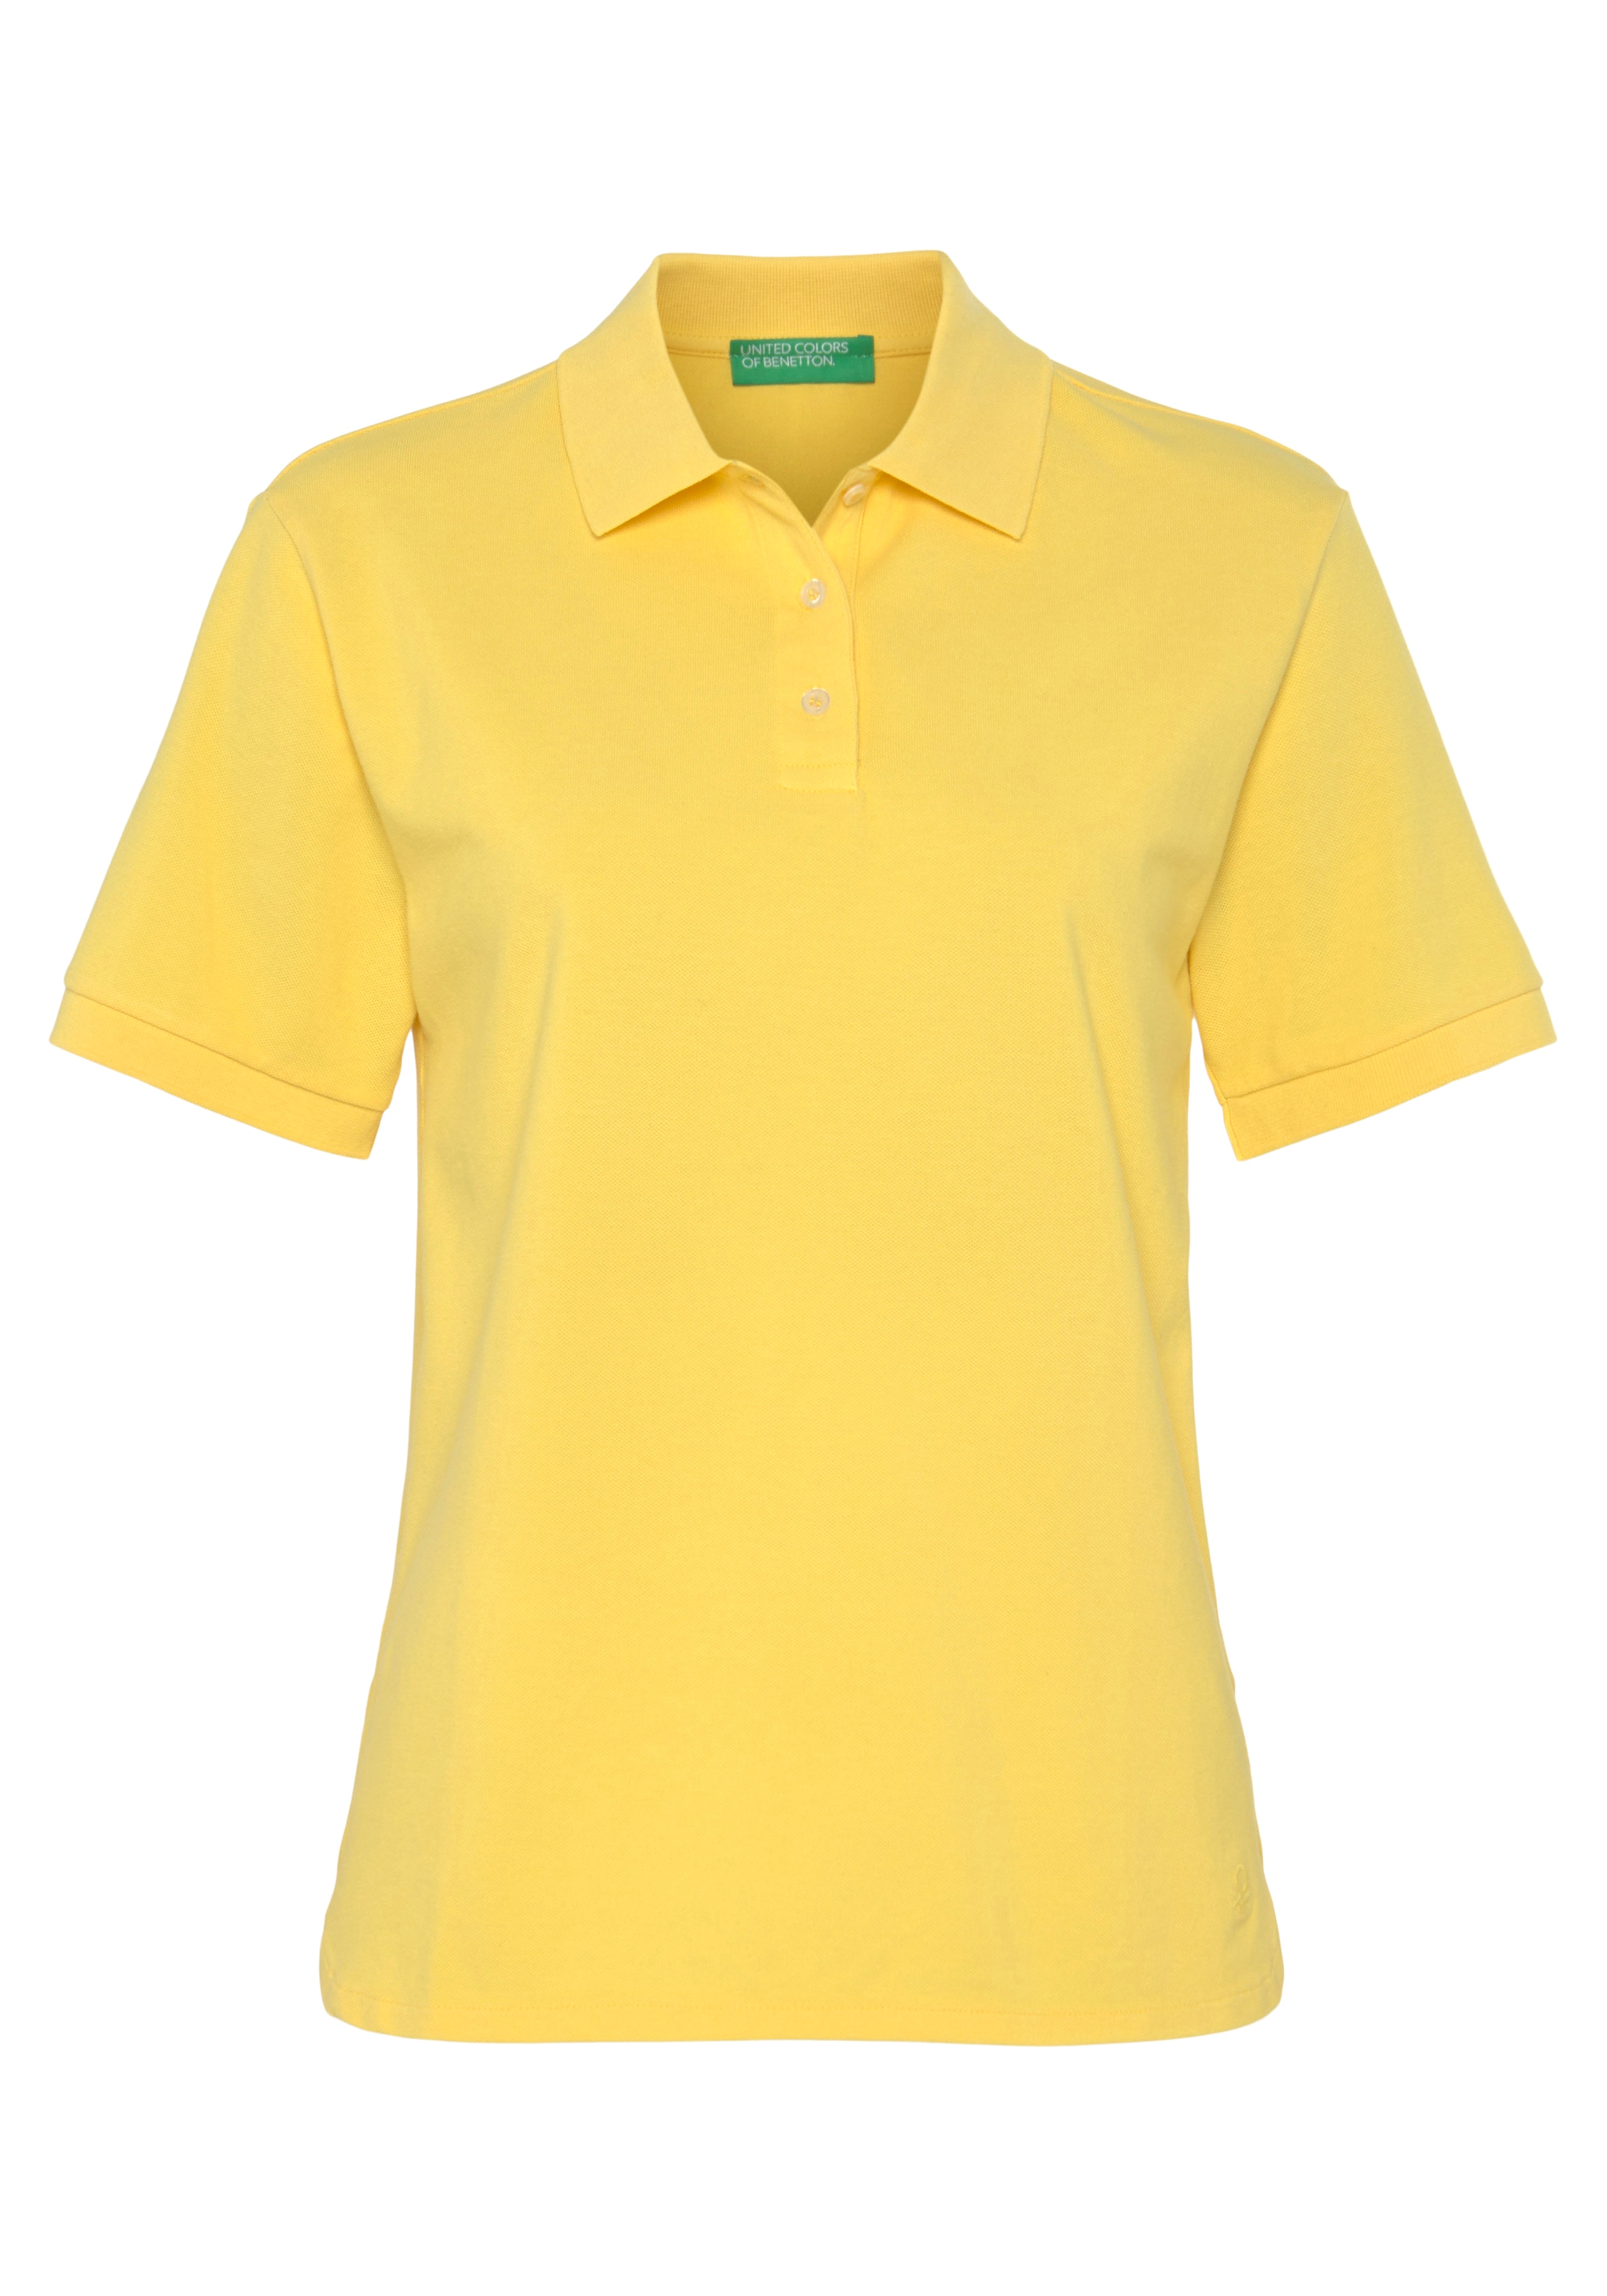 Benetton Colors of Poloshirt, OTTO online Knöpfen kaufen bei perlmuttfarbenen mit United